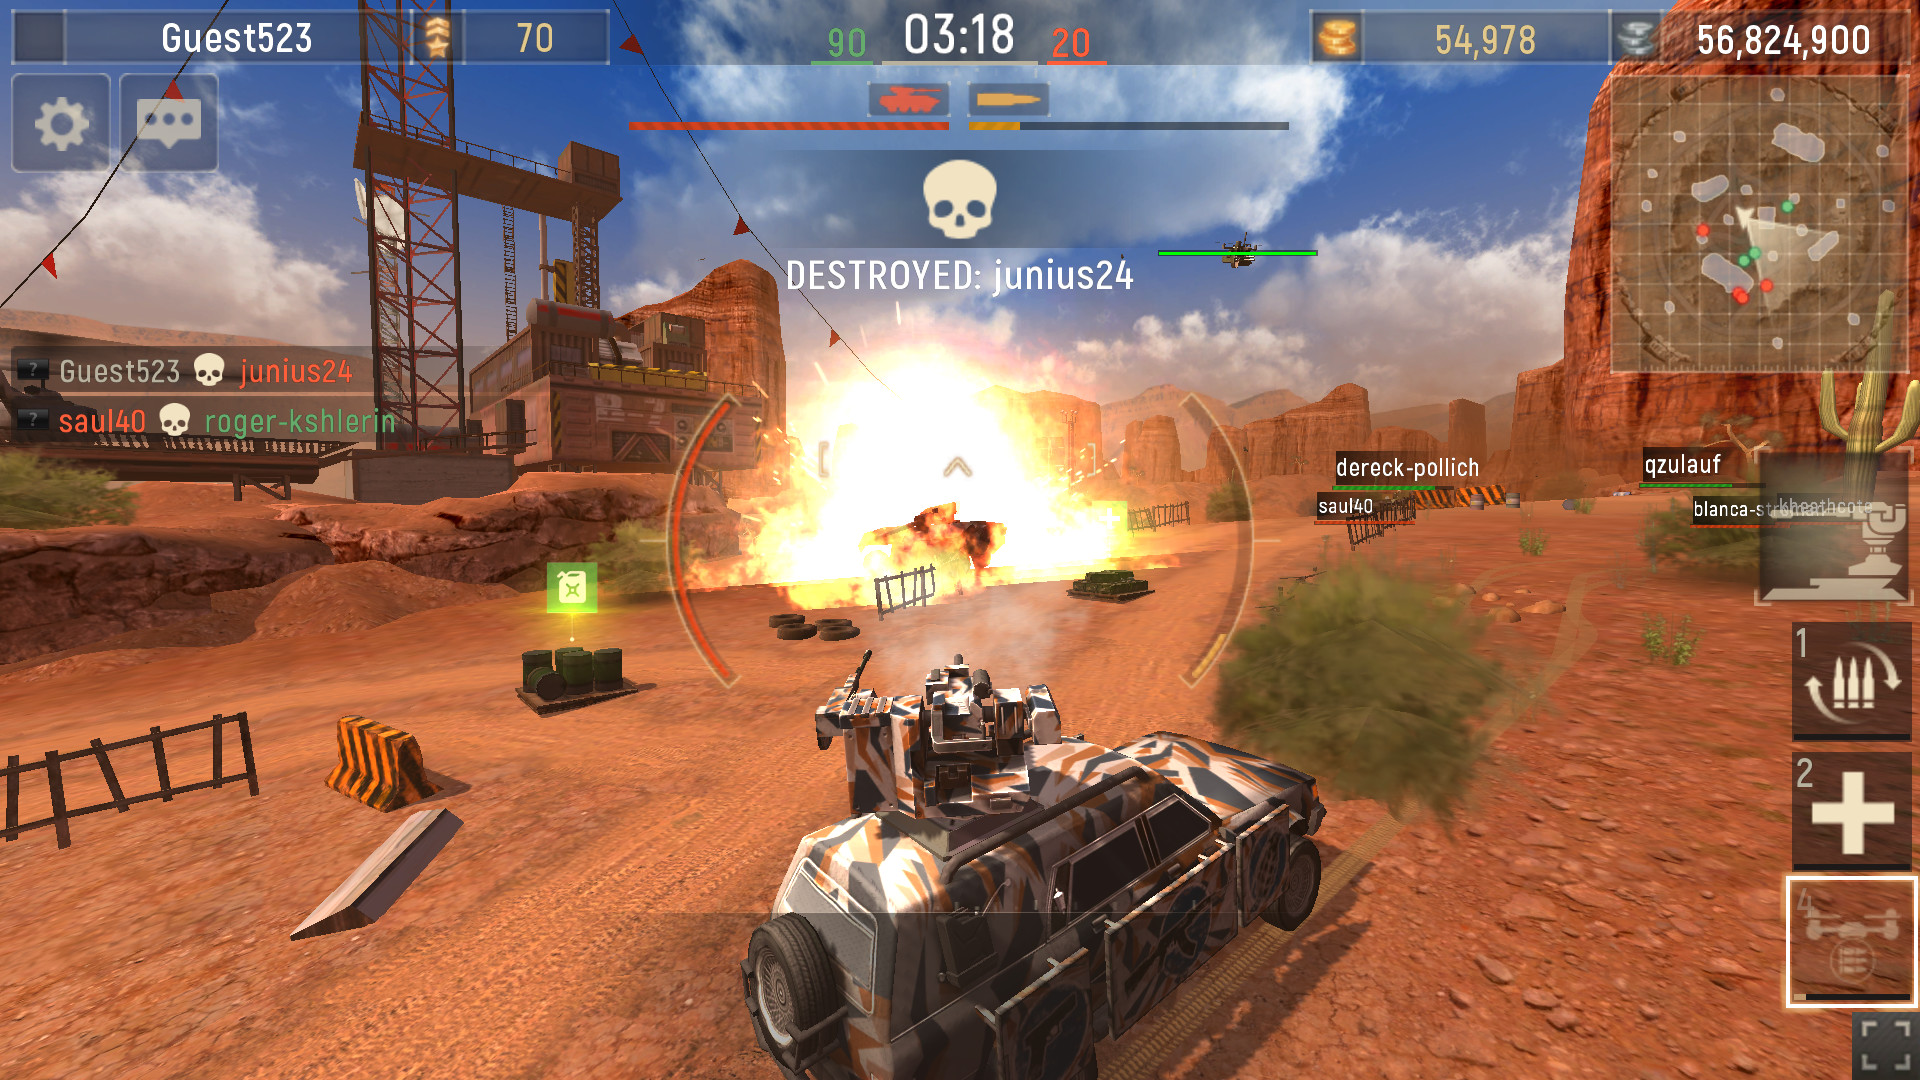 tank shooting game online